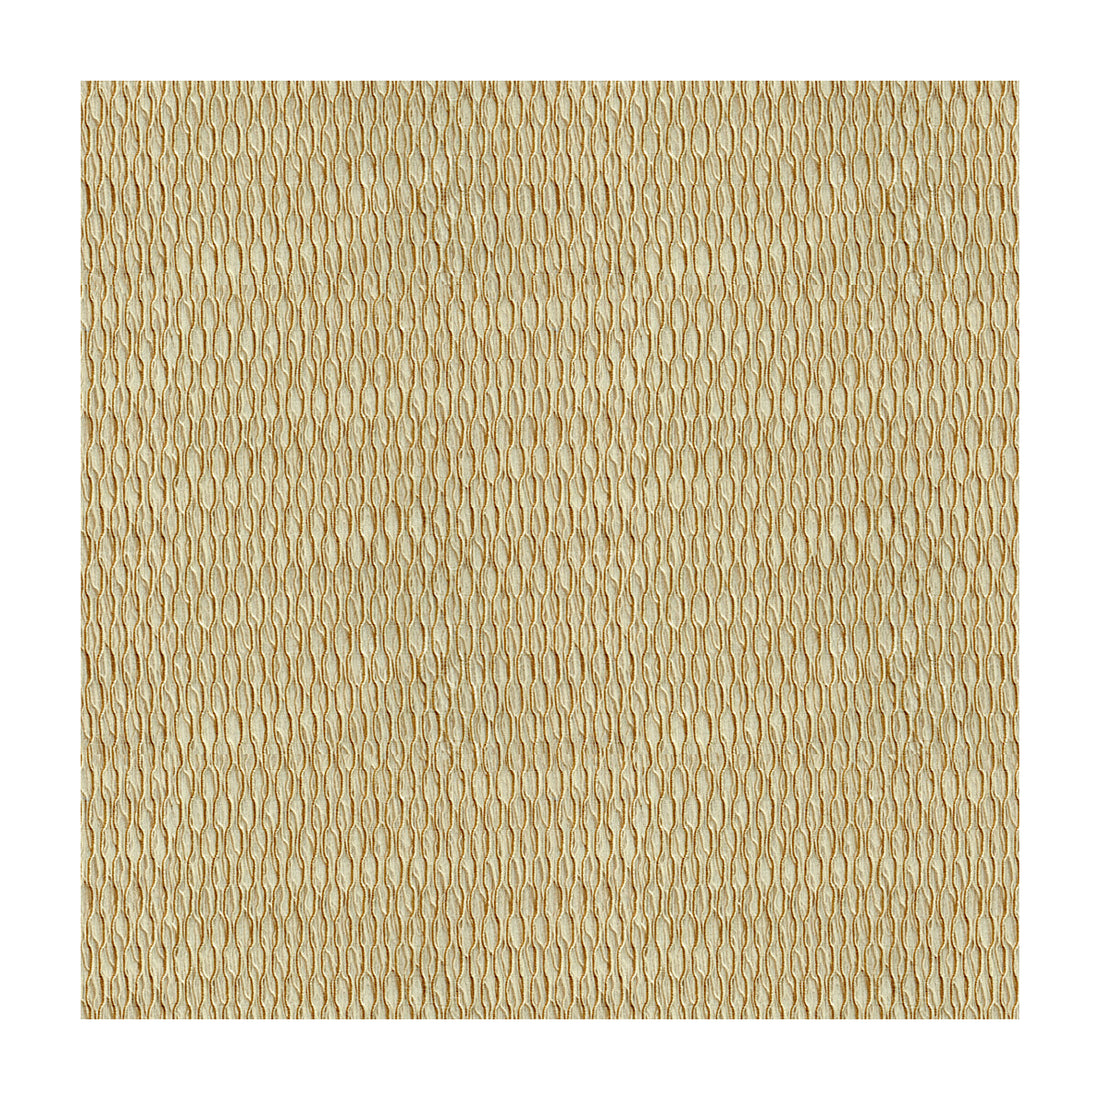 Kravet Basics fabric in 4105-1616 color - pattern 4105.1616.0 - by Kravet Basics